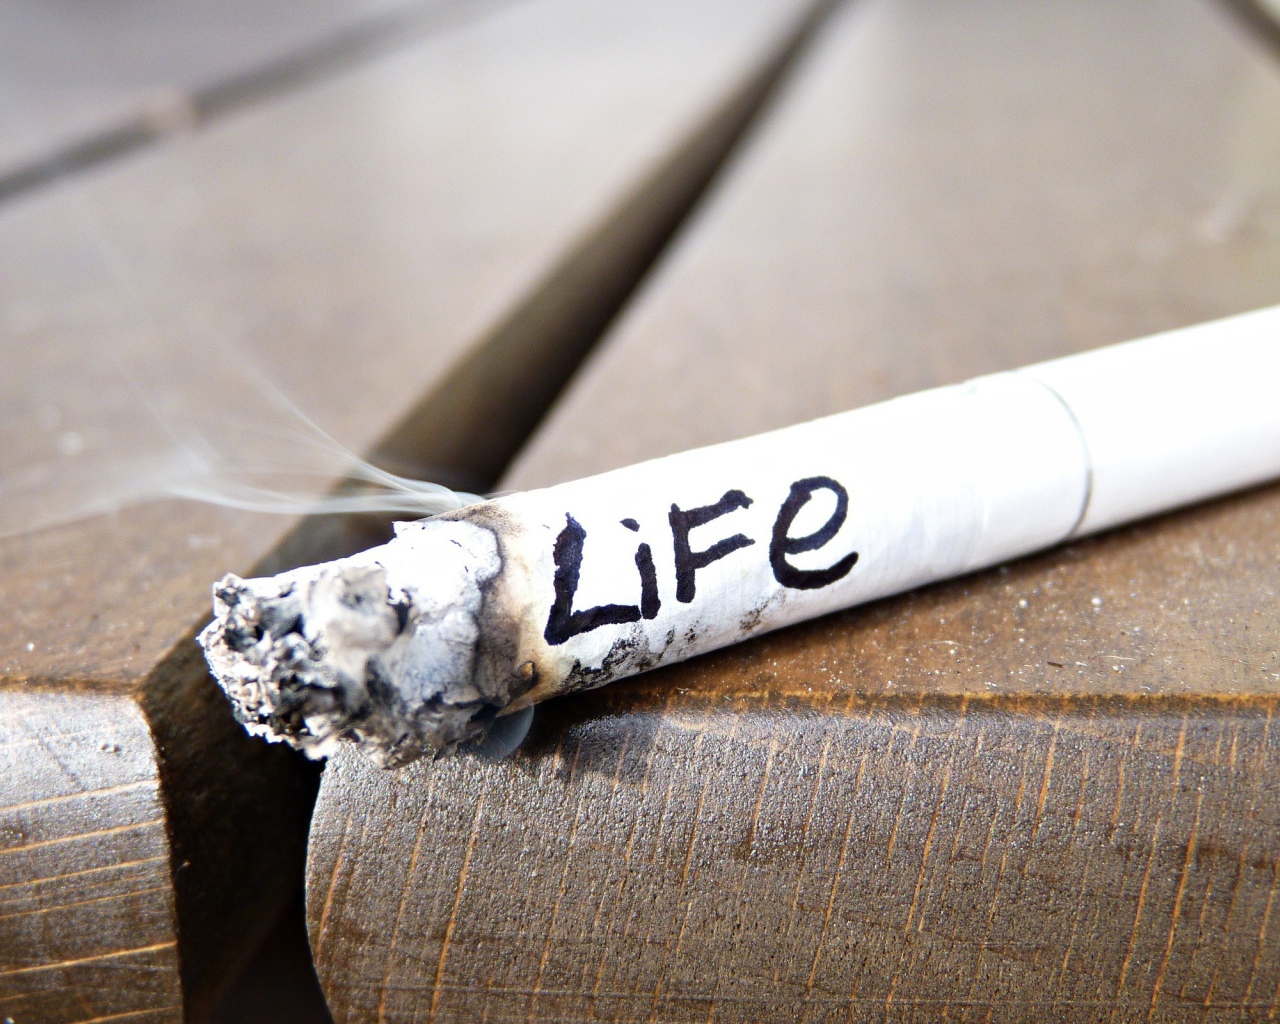 С сигаретой сгорает жизнь